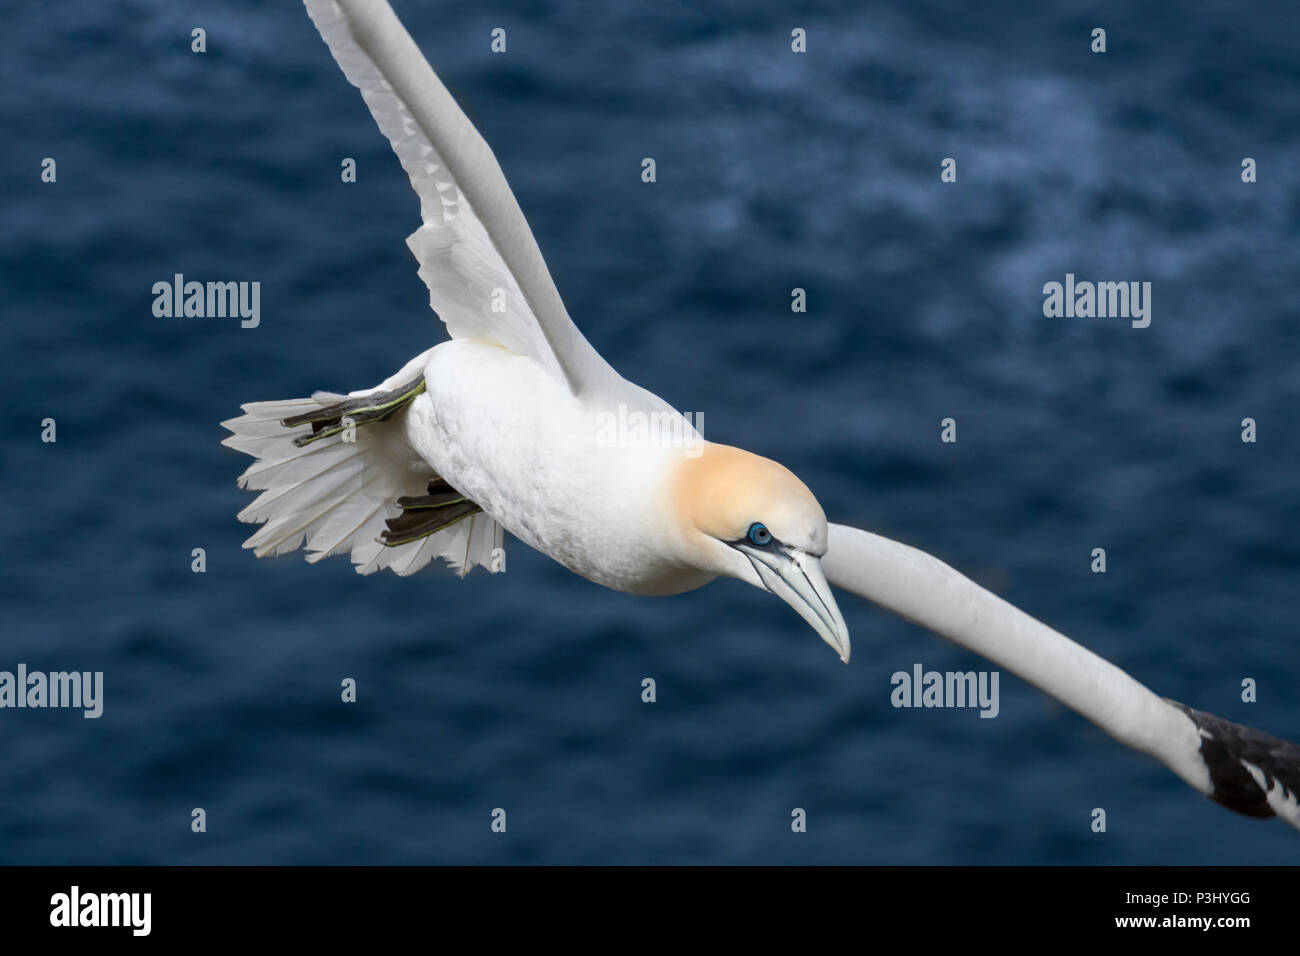 Northern gannet (Morus bassanus) in flight soaring over water of the Atlantic Ocean Stock Photo